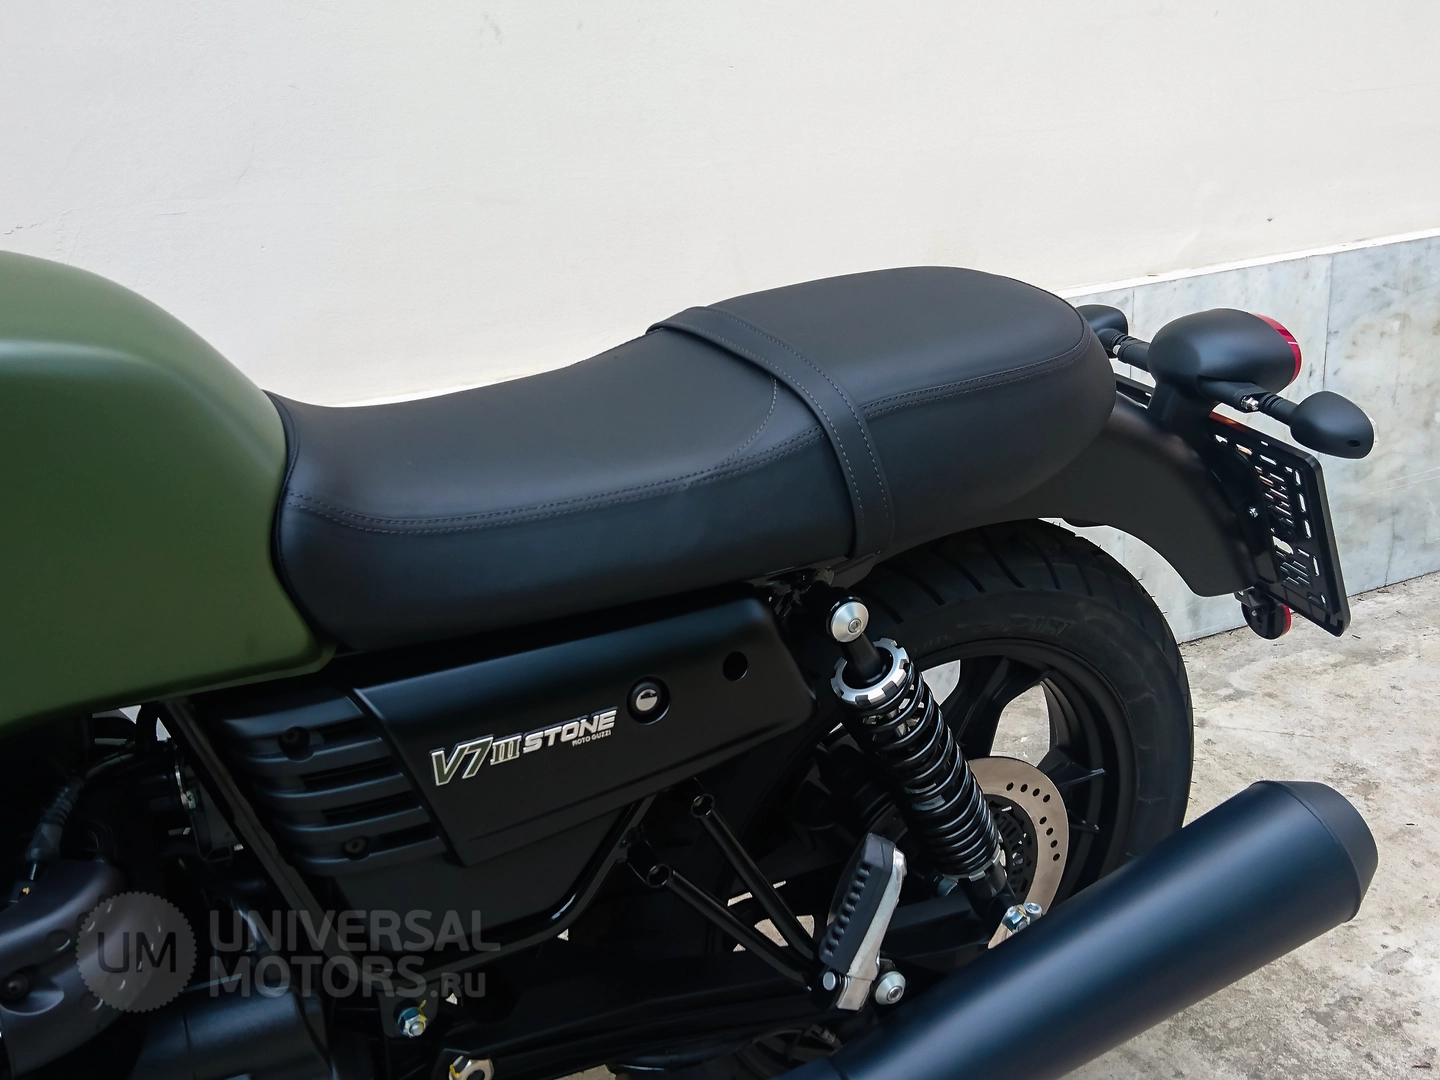 Мотоцикл MOTO GUZZI V7 III Stone ABS, Передний тормоз описание плавающие диски из нержавеющей стали, диаметр 320 мм, суппортами brembo с 4 разноразмерными оппозитными поршнями